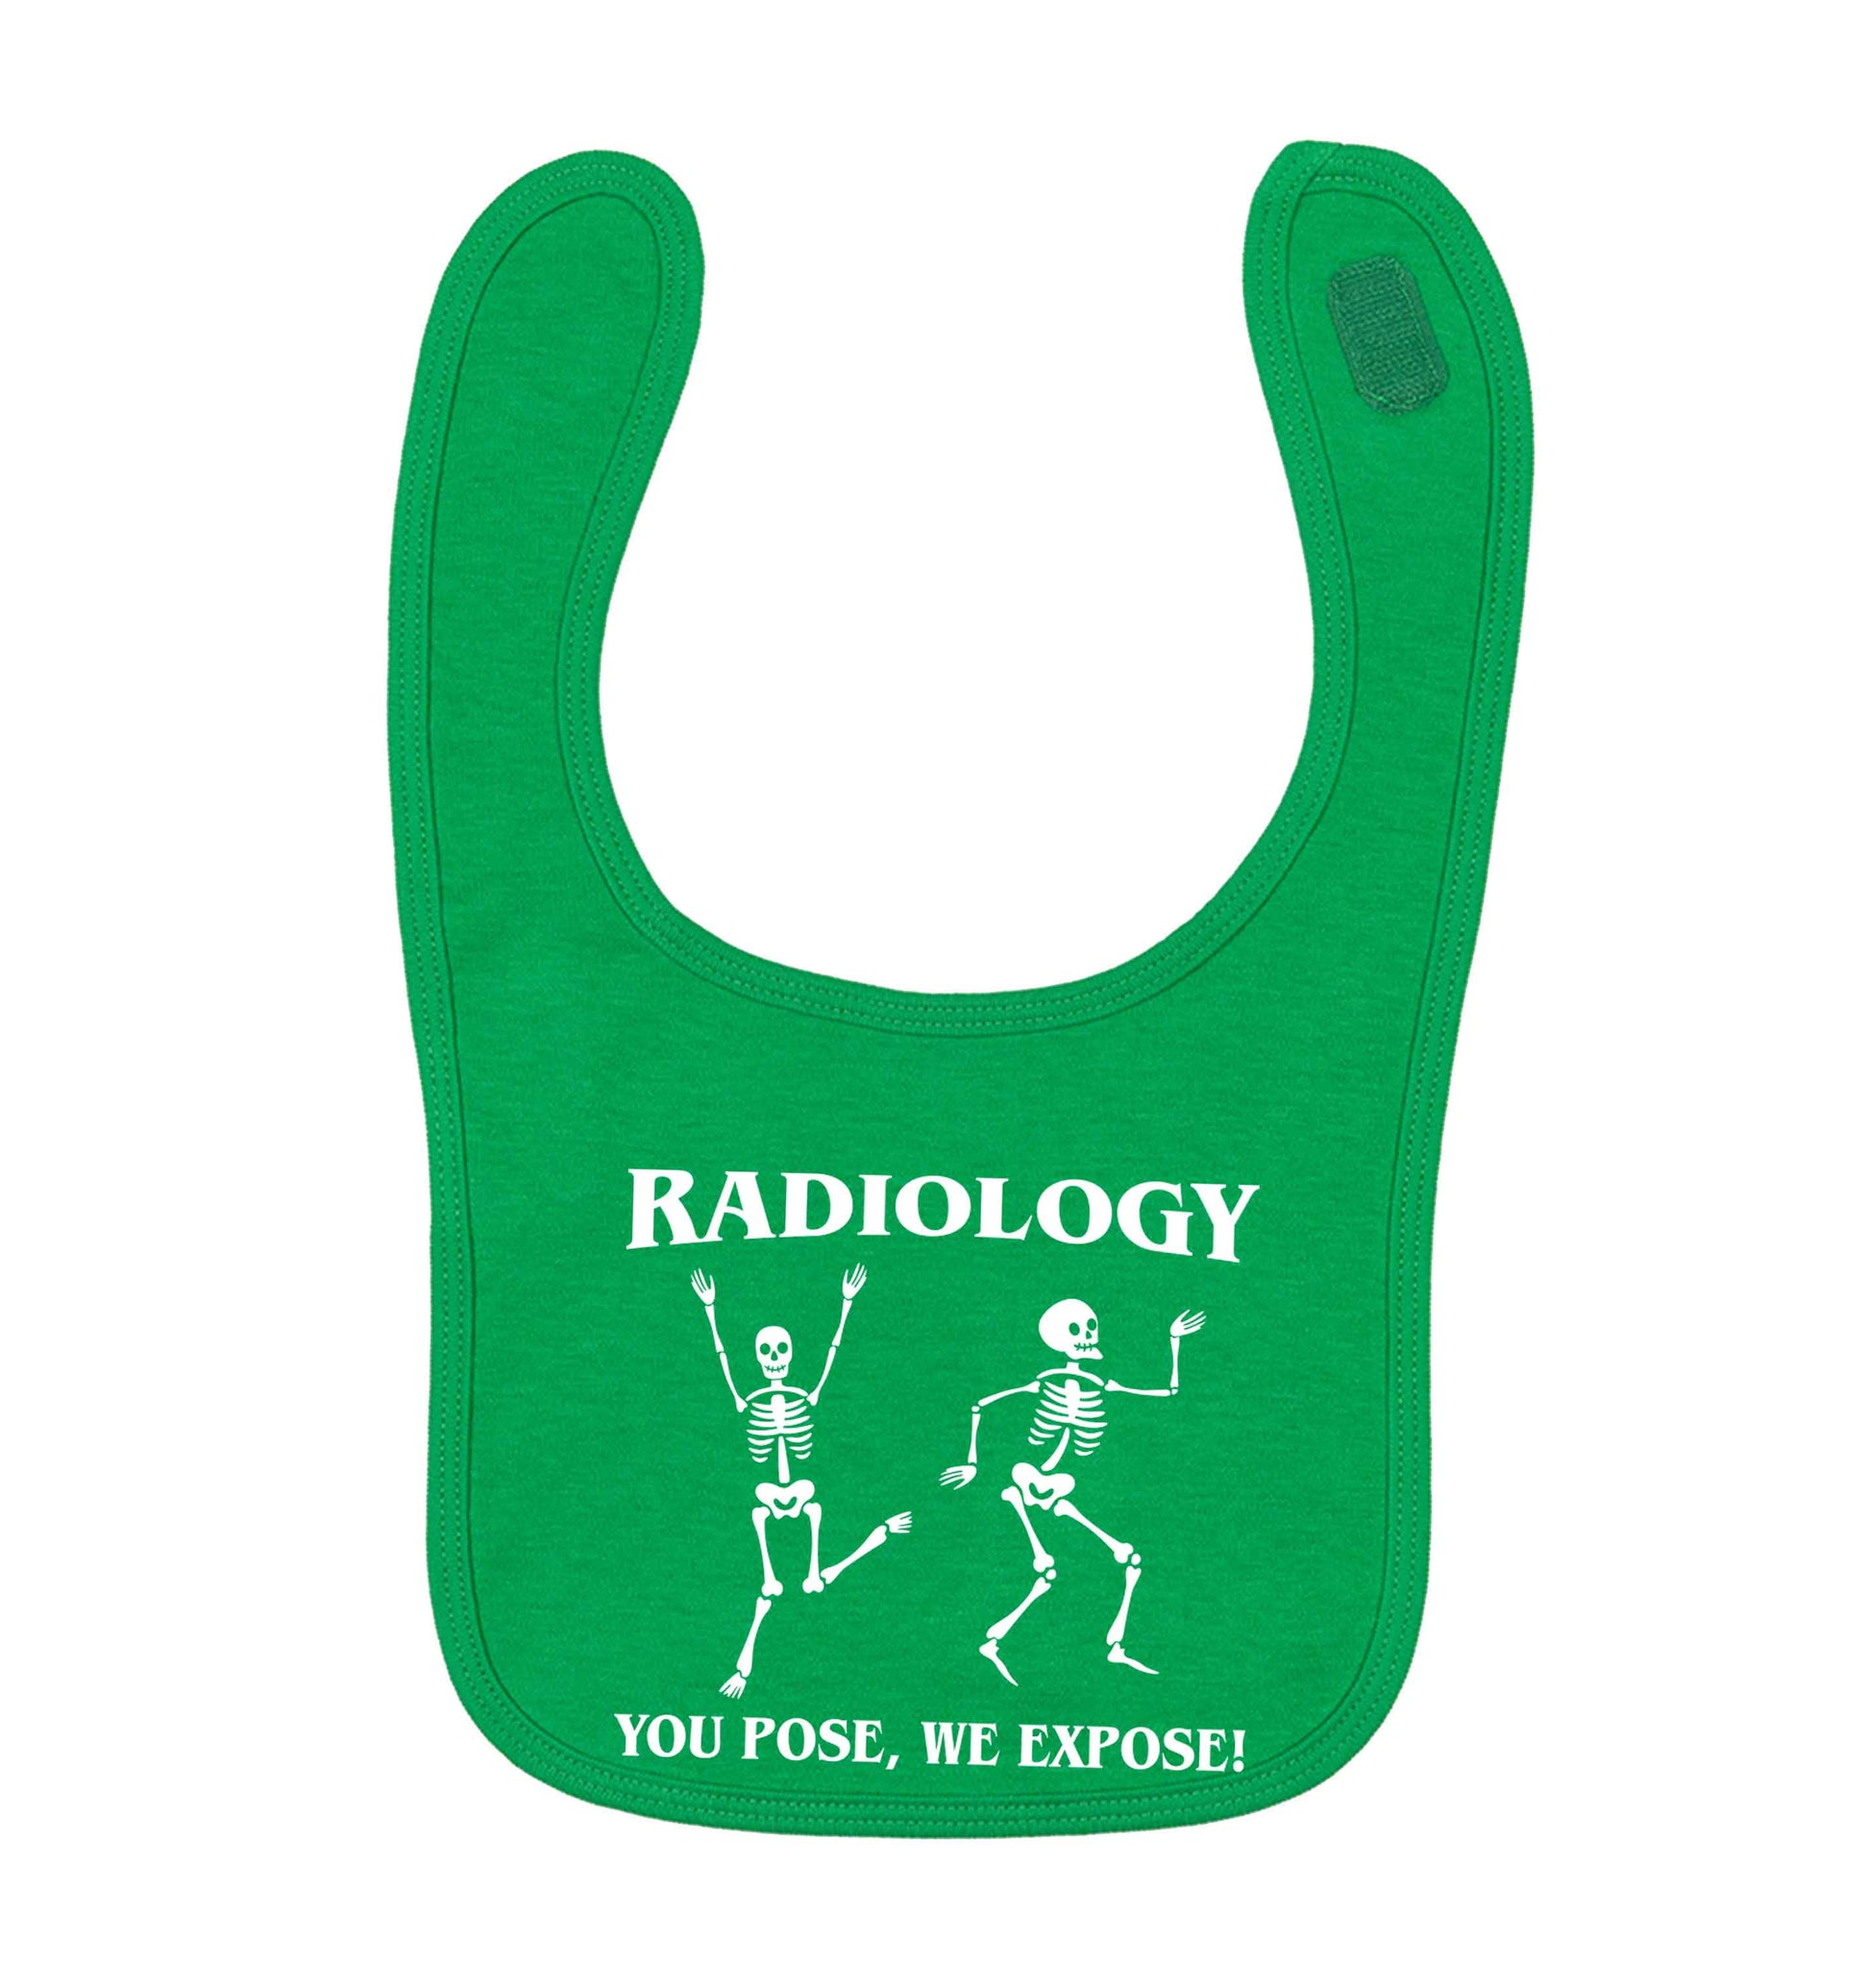 Radiology you pose we expose green baby bib